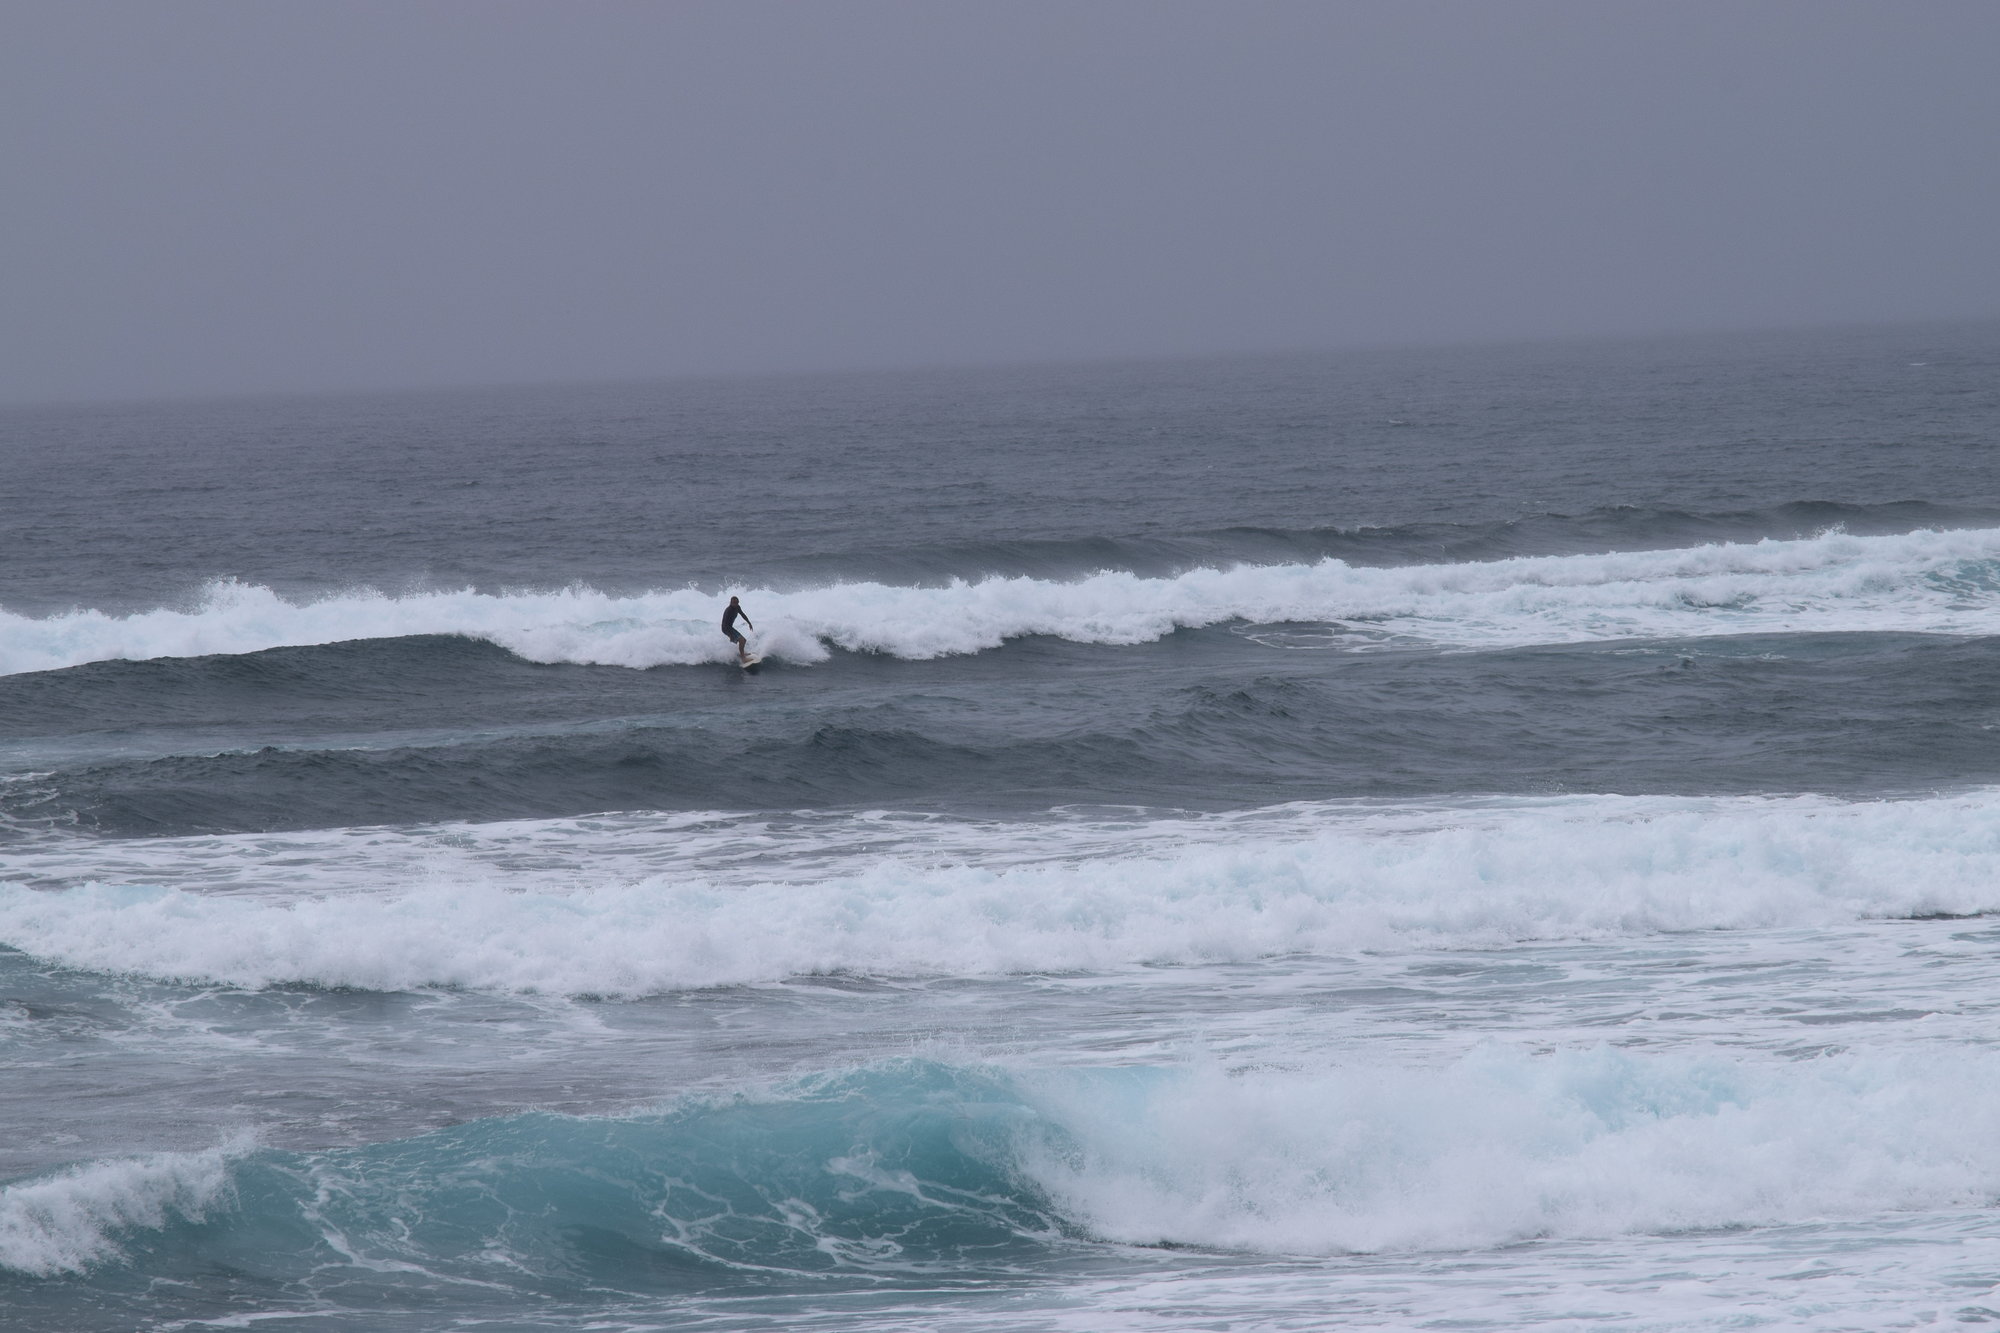 Solo surfer